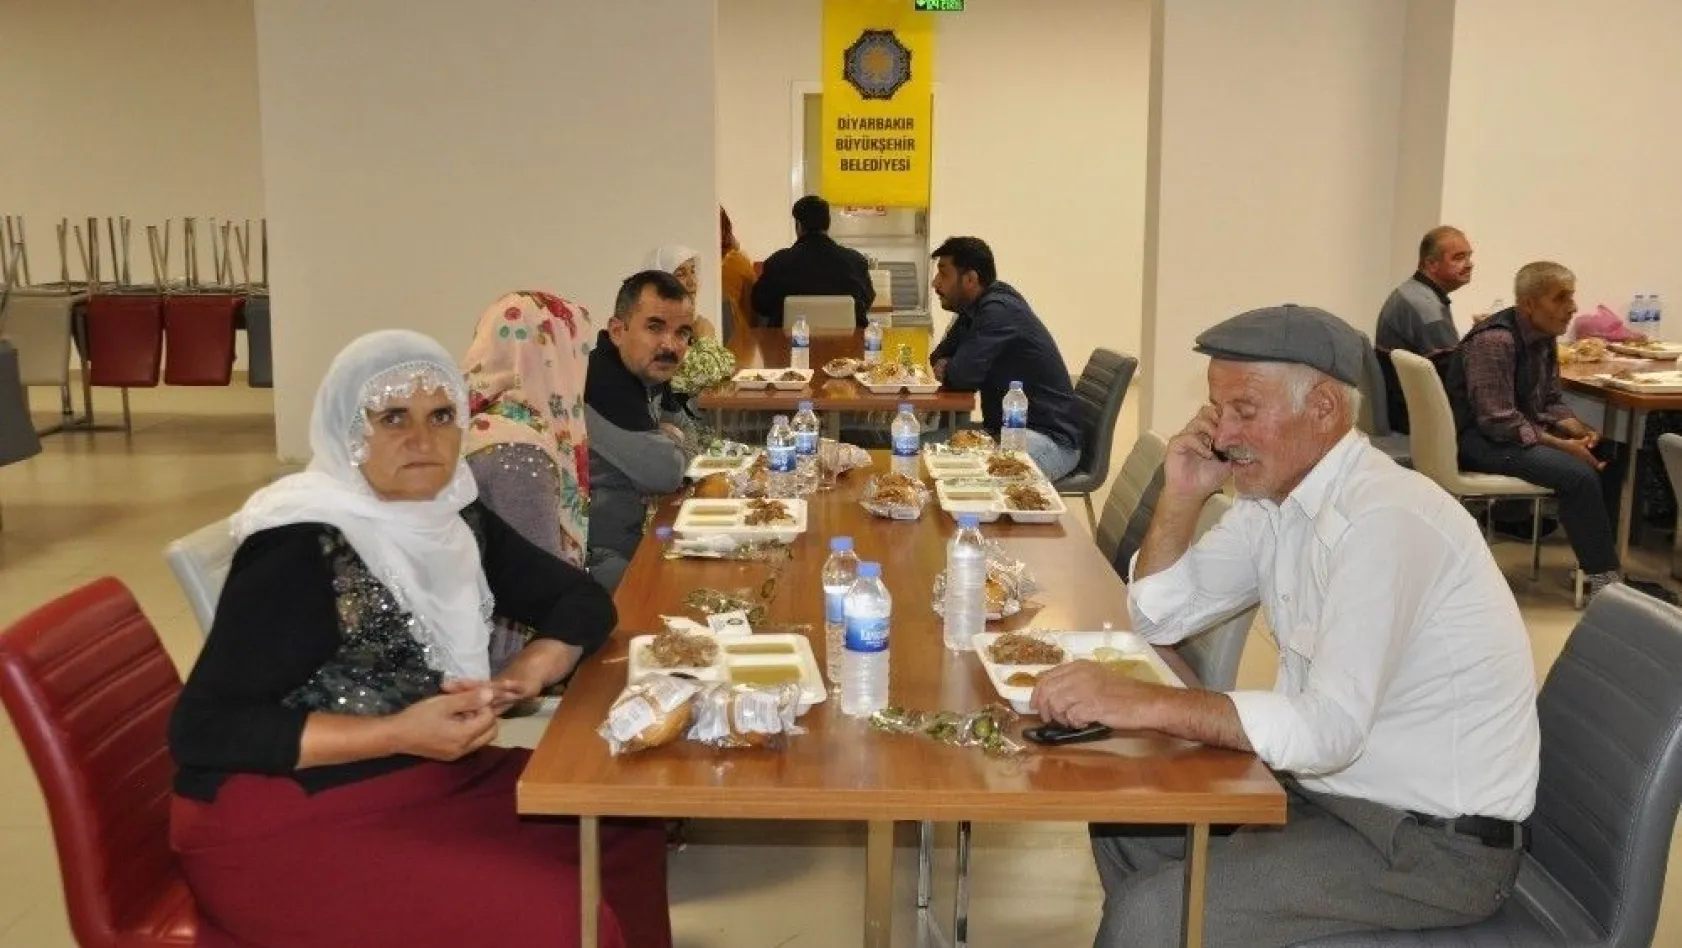 Diyarbakır Büyükşehir Belediyesi şehir dışından gelen hasta yakınlarını misafirhanede ağırlıyor
